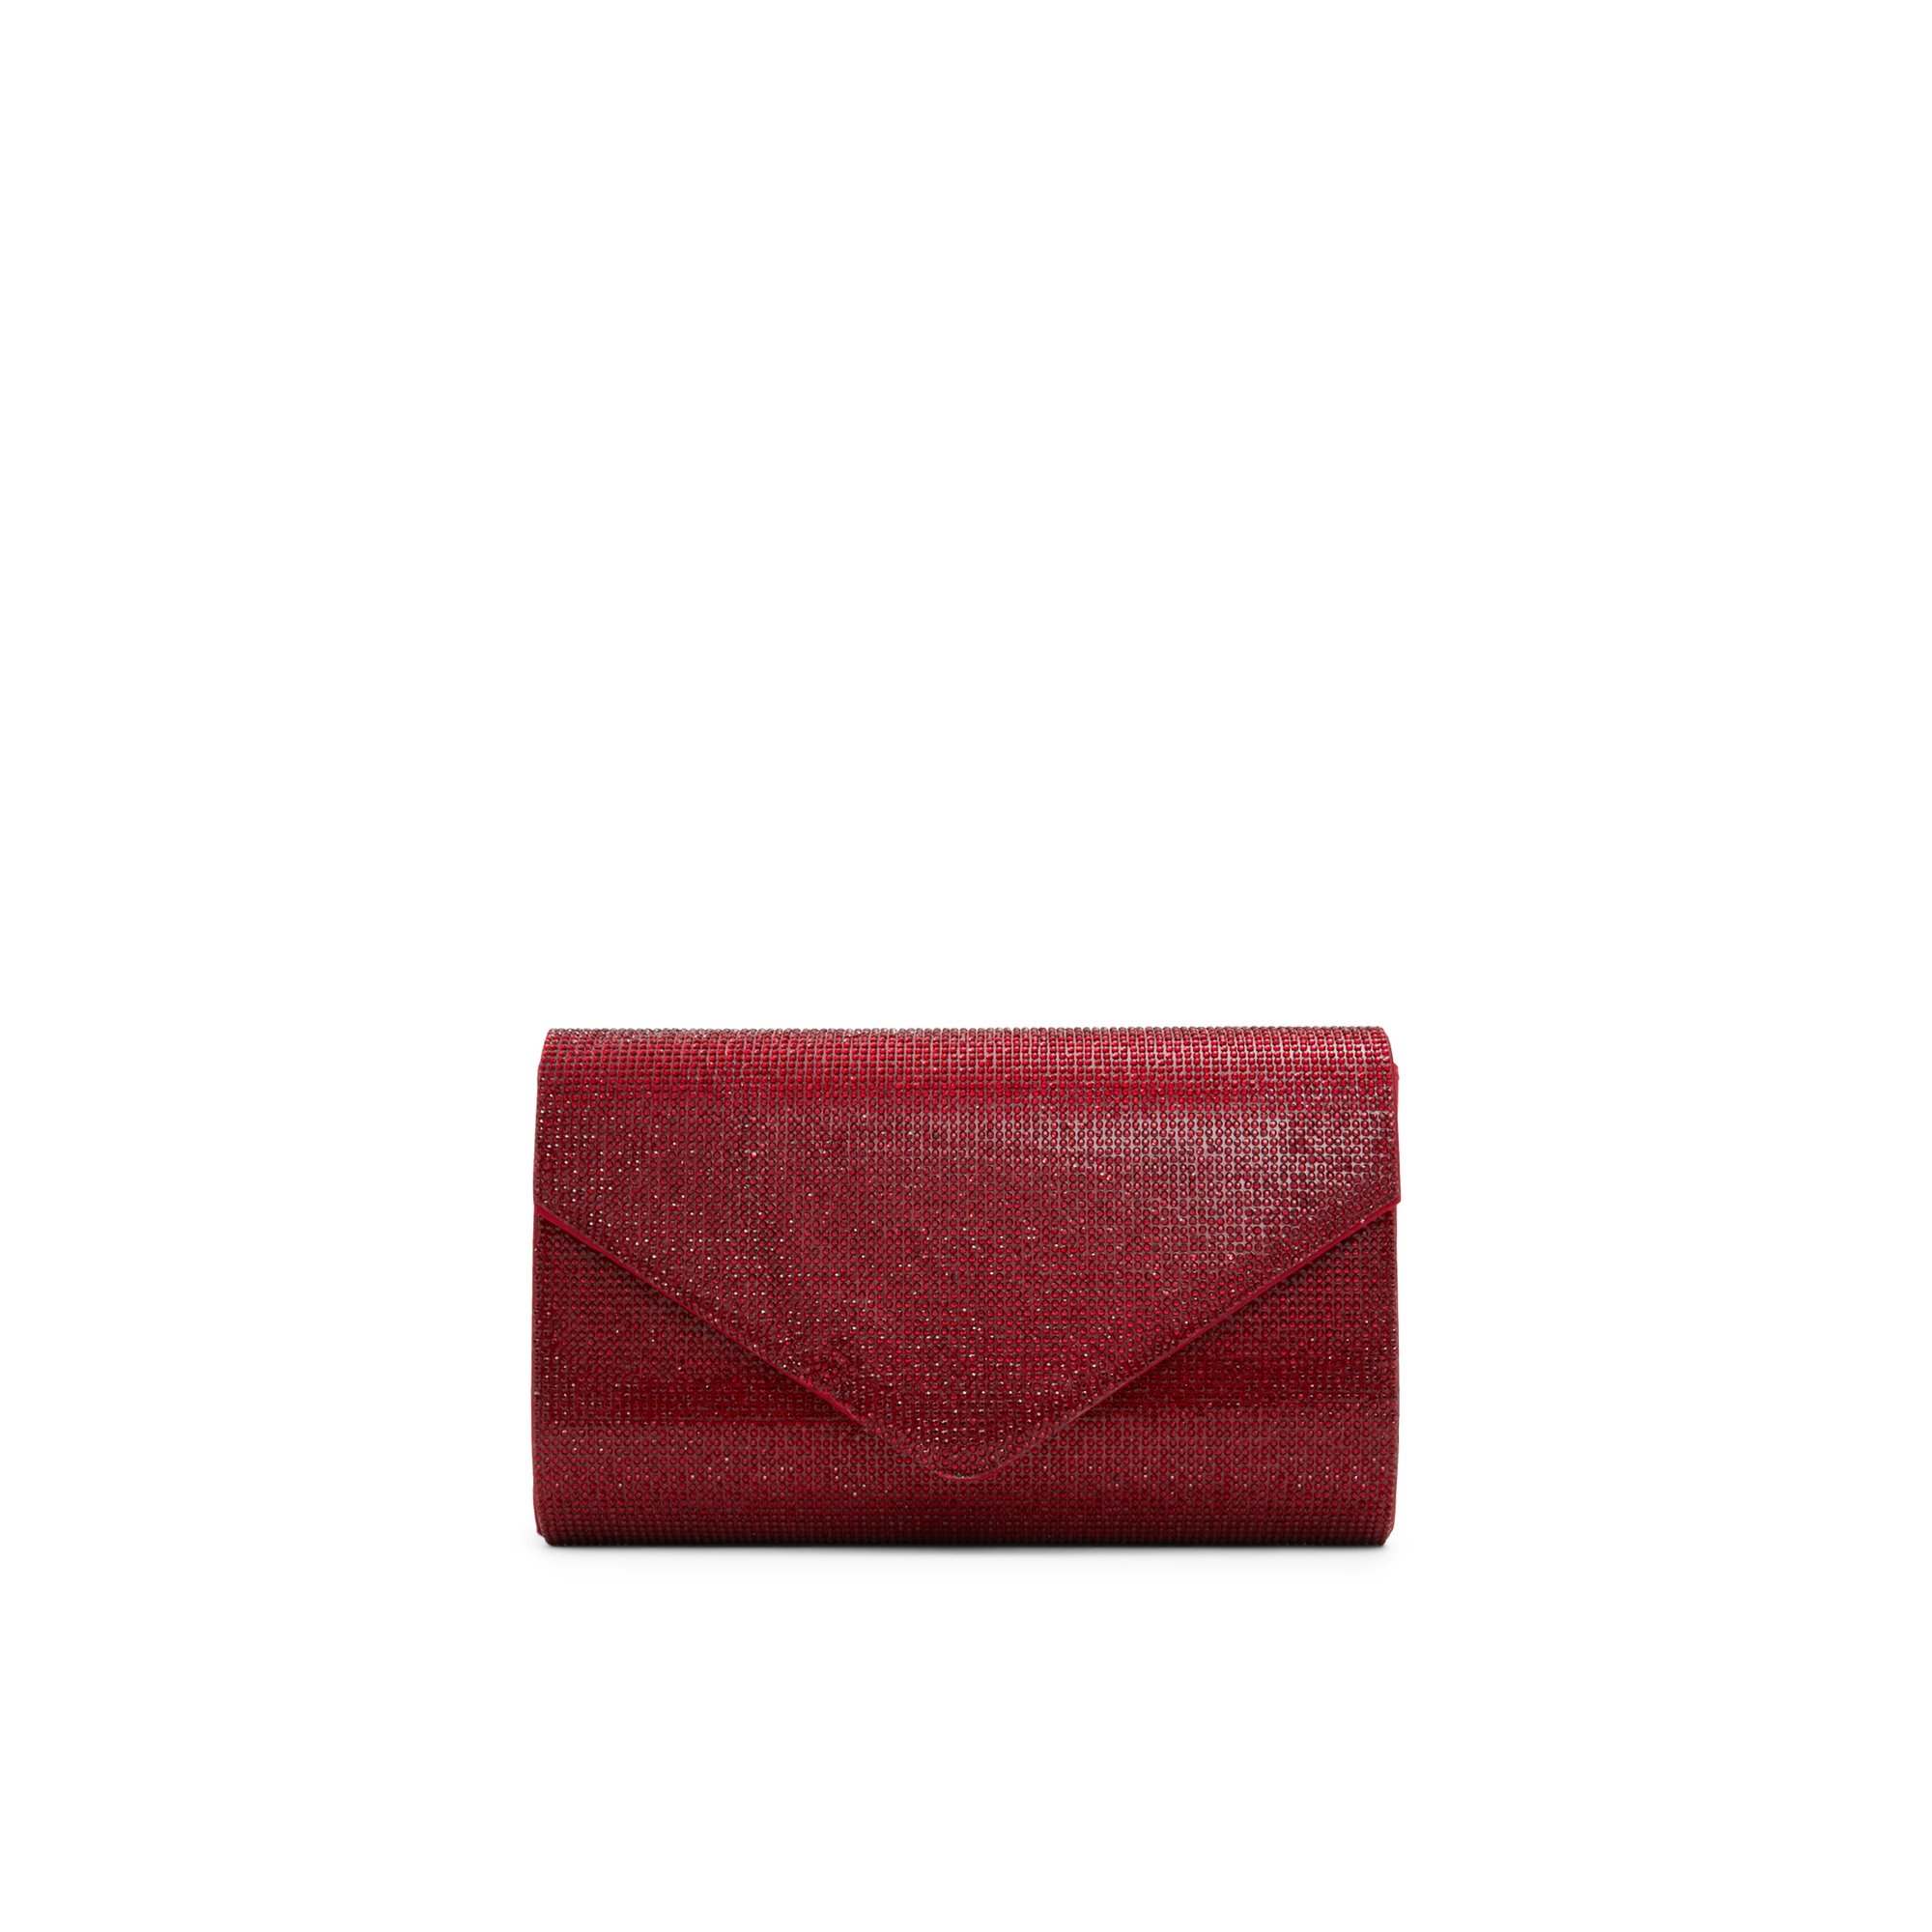 ALDO Geaven - Women's Handbags Clutches & Evening Bags - Red